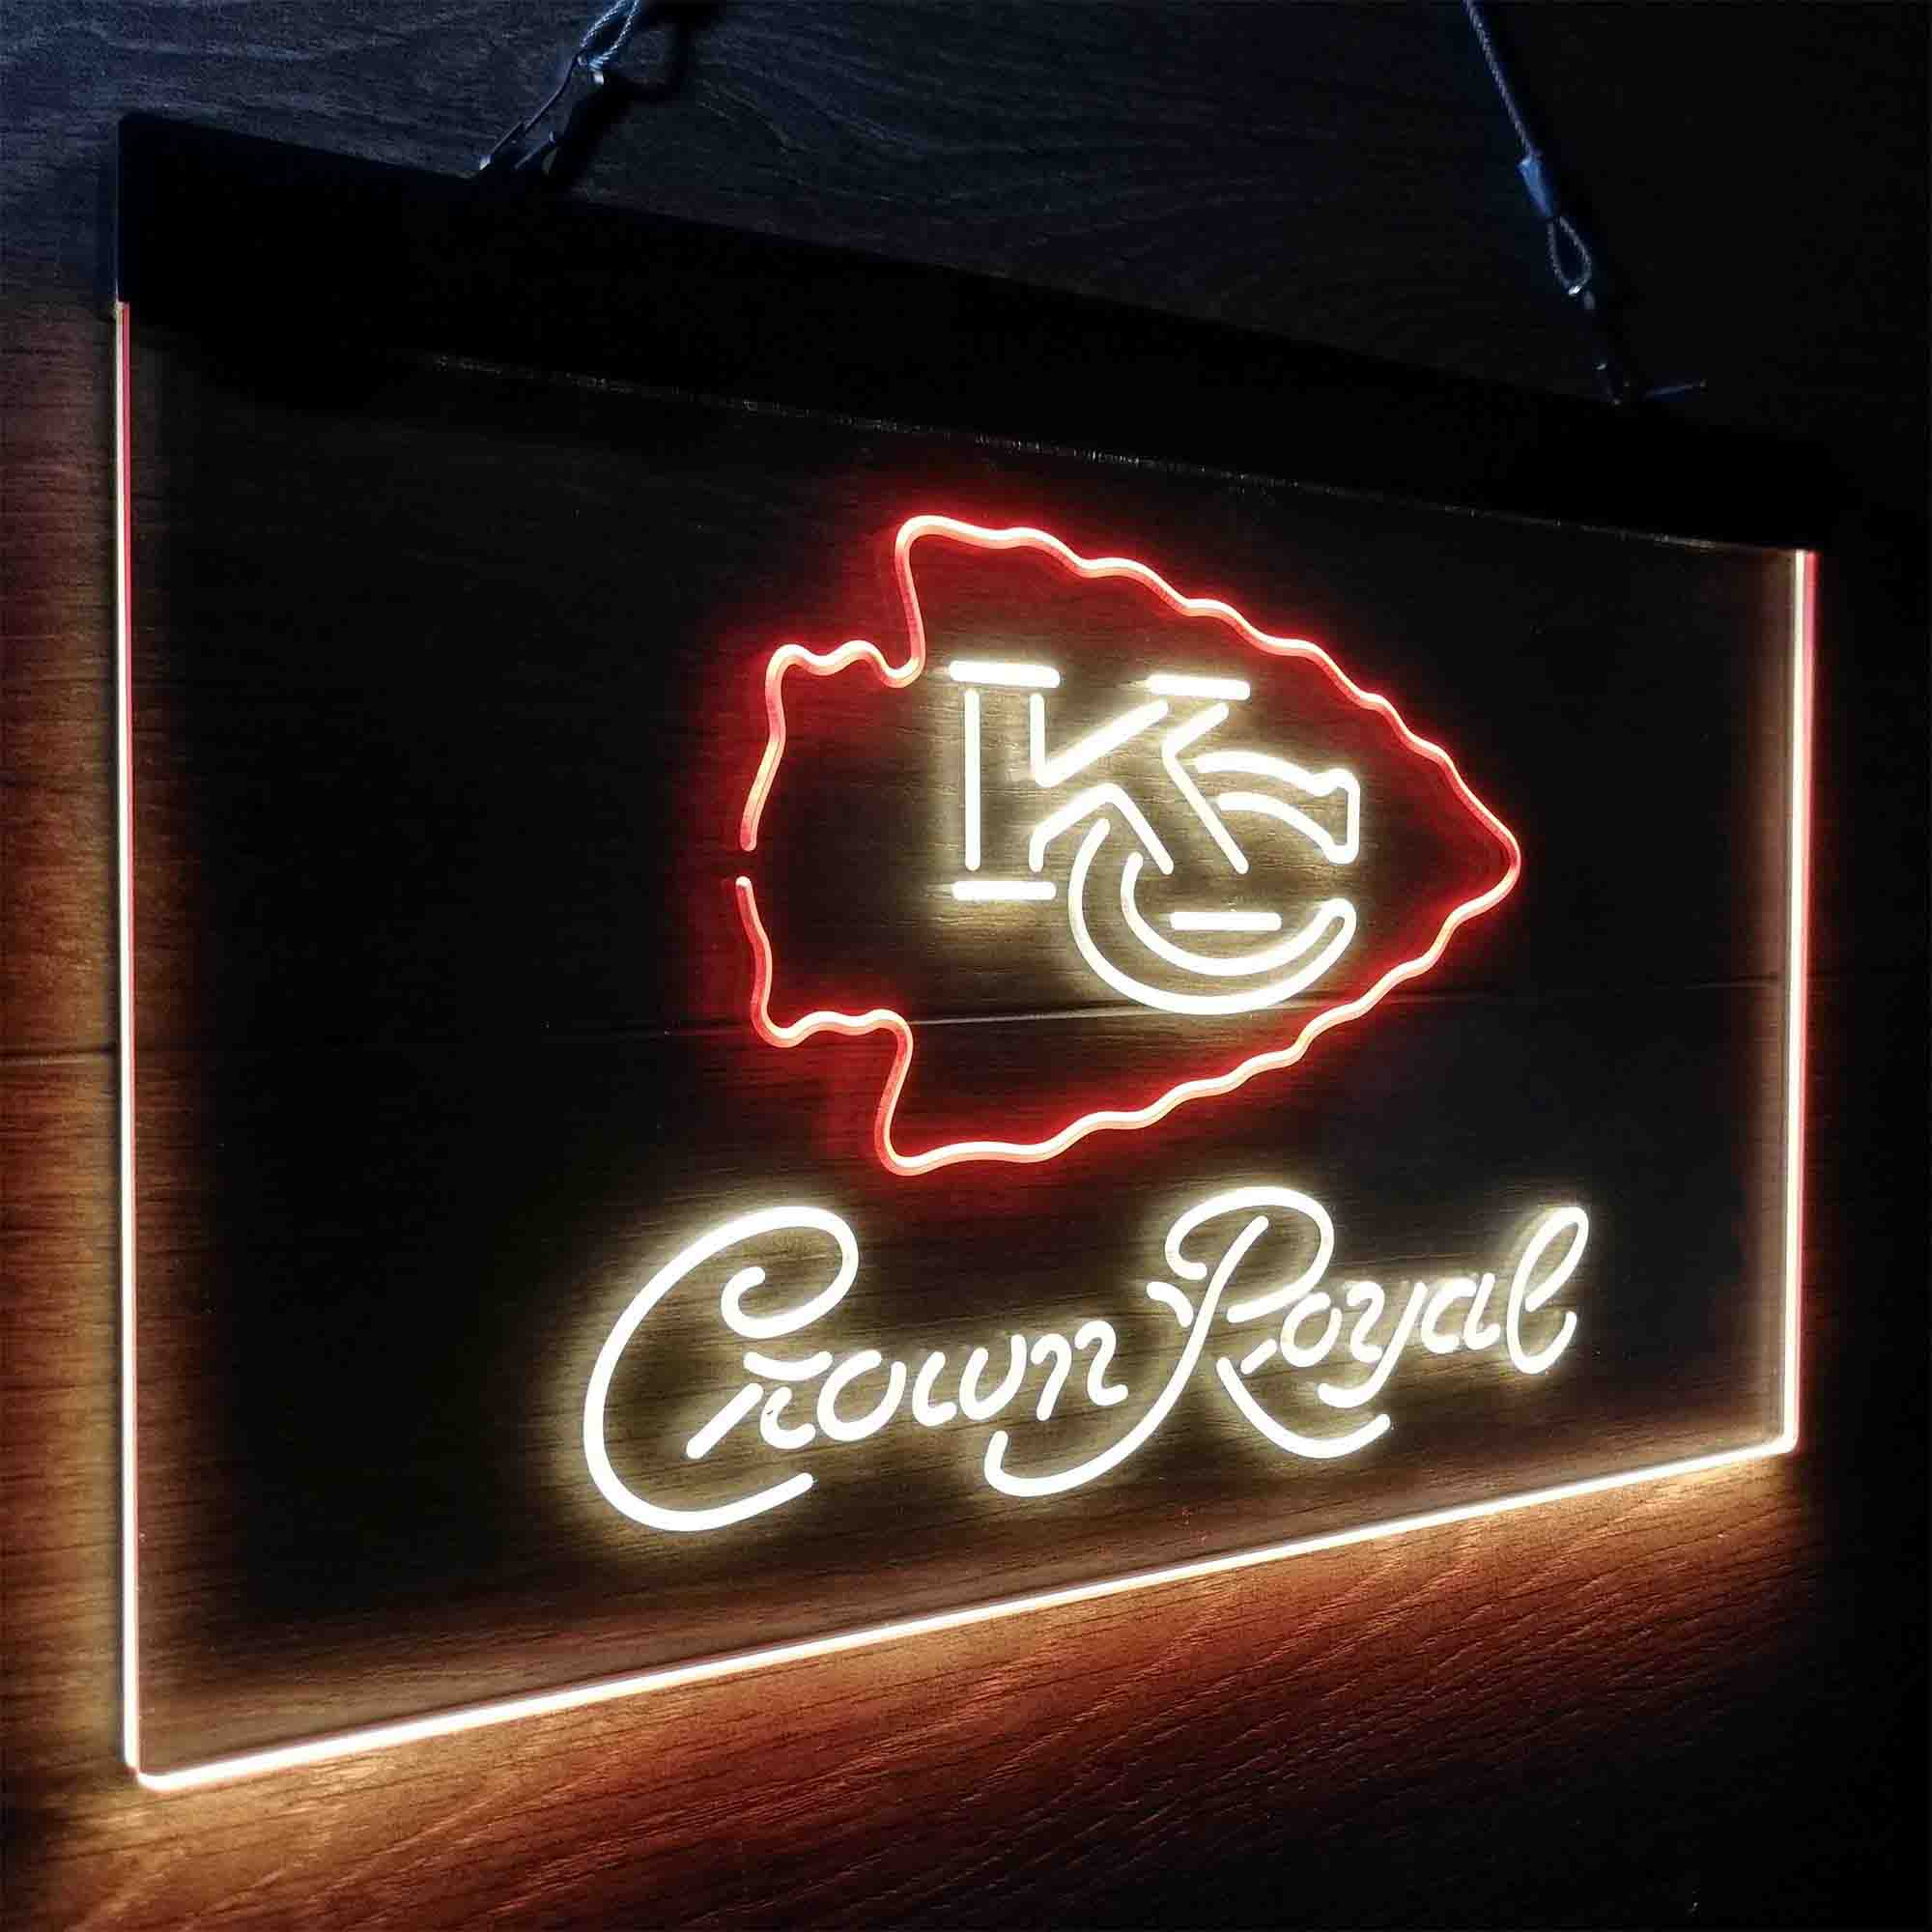 Crown Royal Bar Kansas City Chiefs Est. 1960 LED Neon Sign